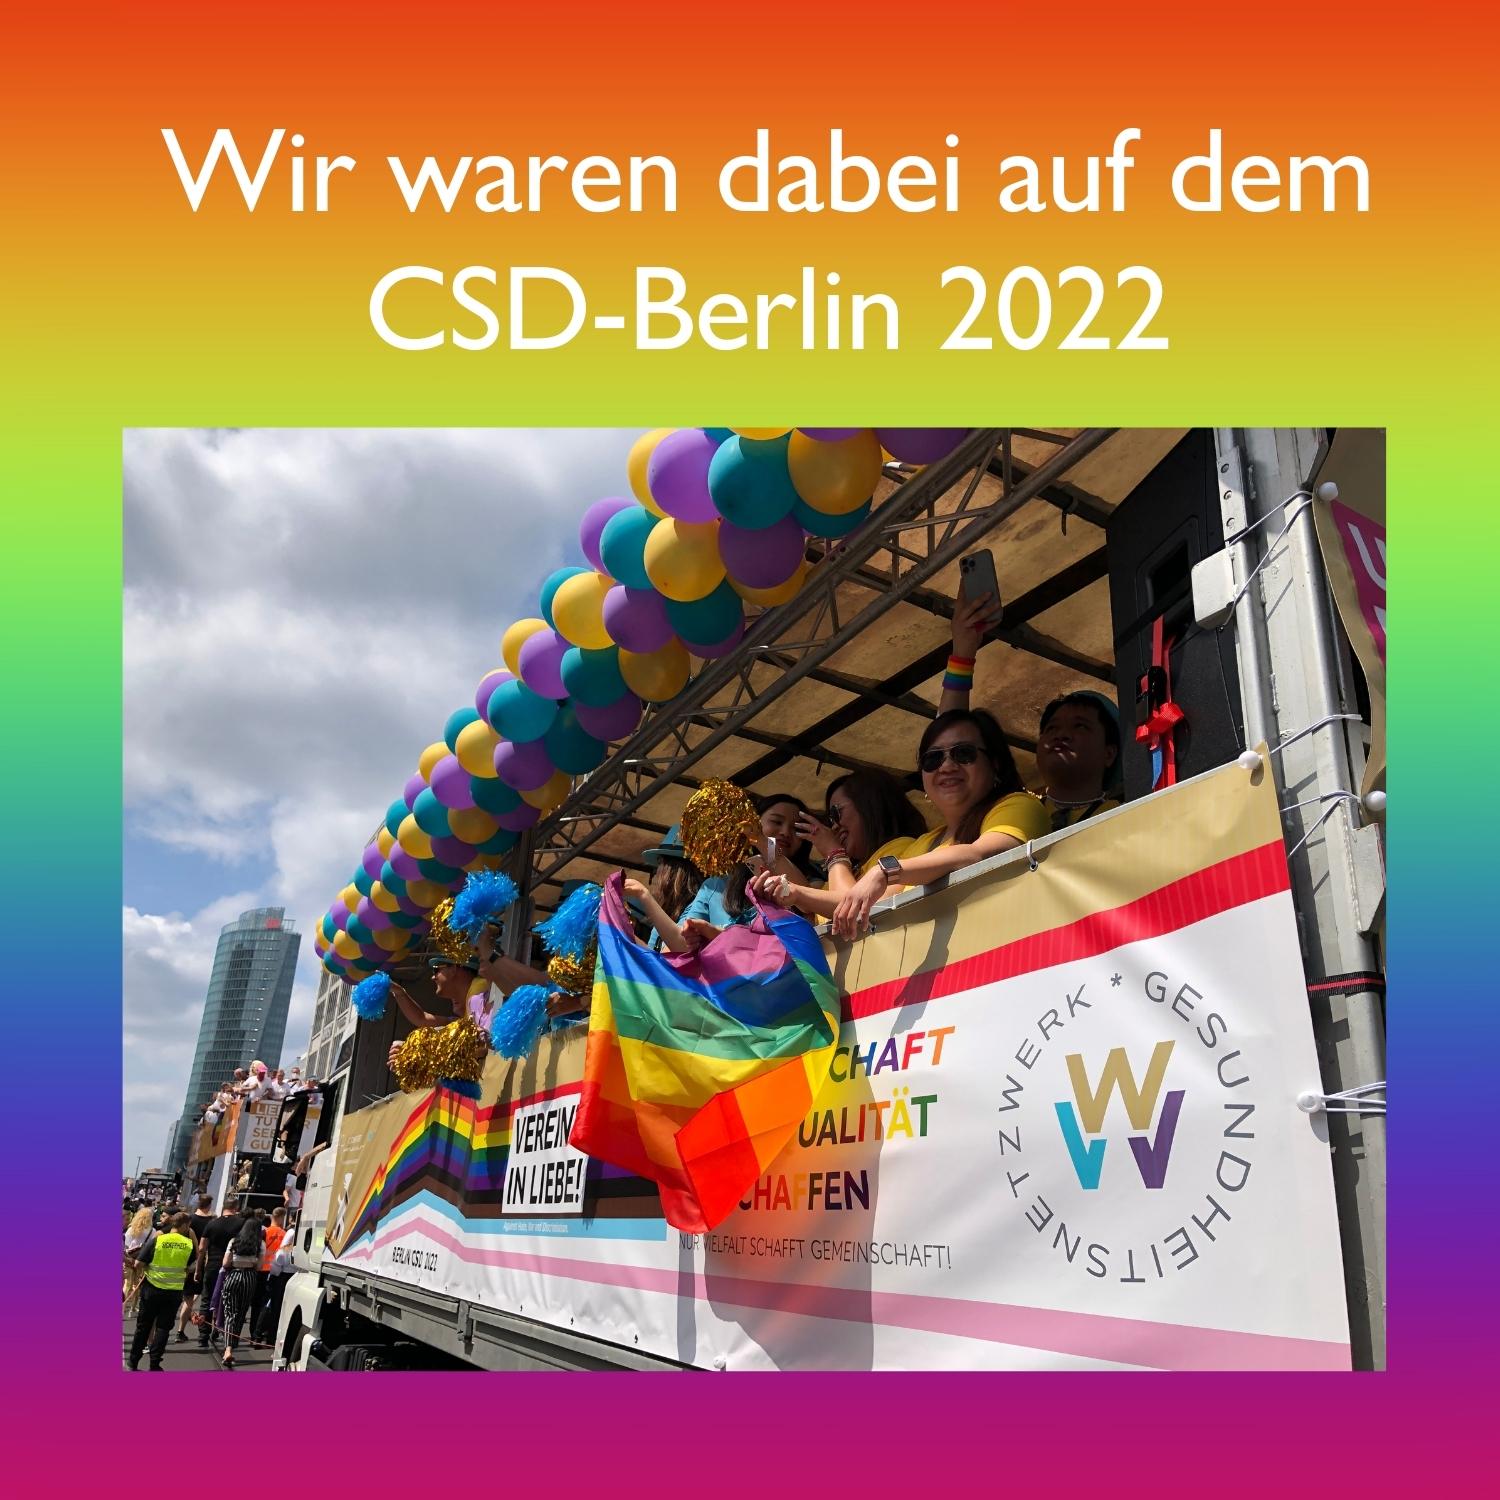 WVV-Gesundheitsnetzwerk aud CSD Berlin 2022